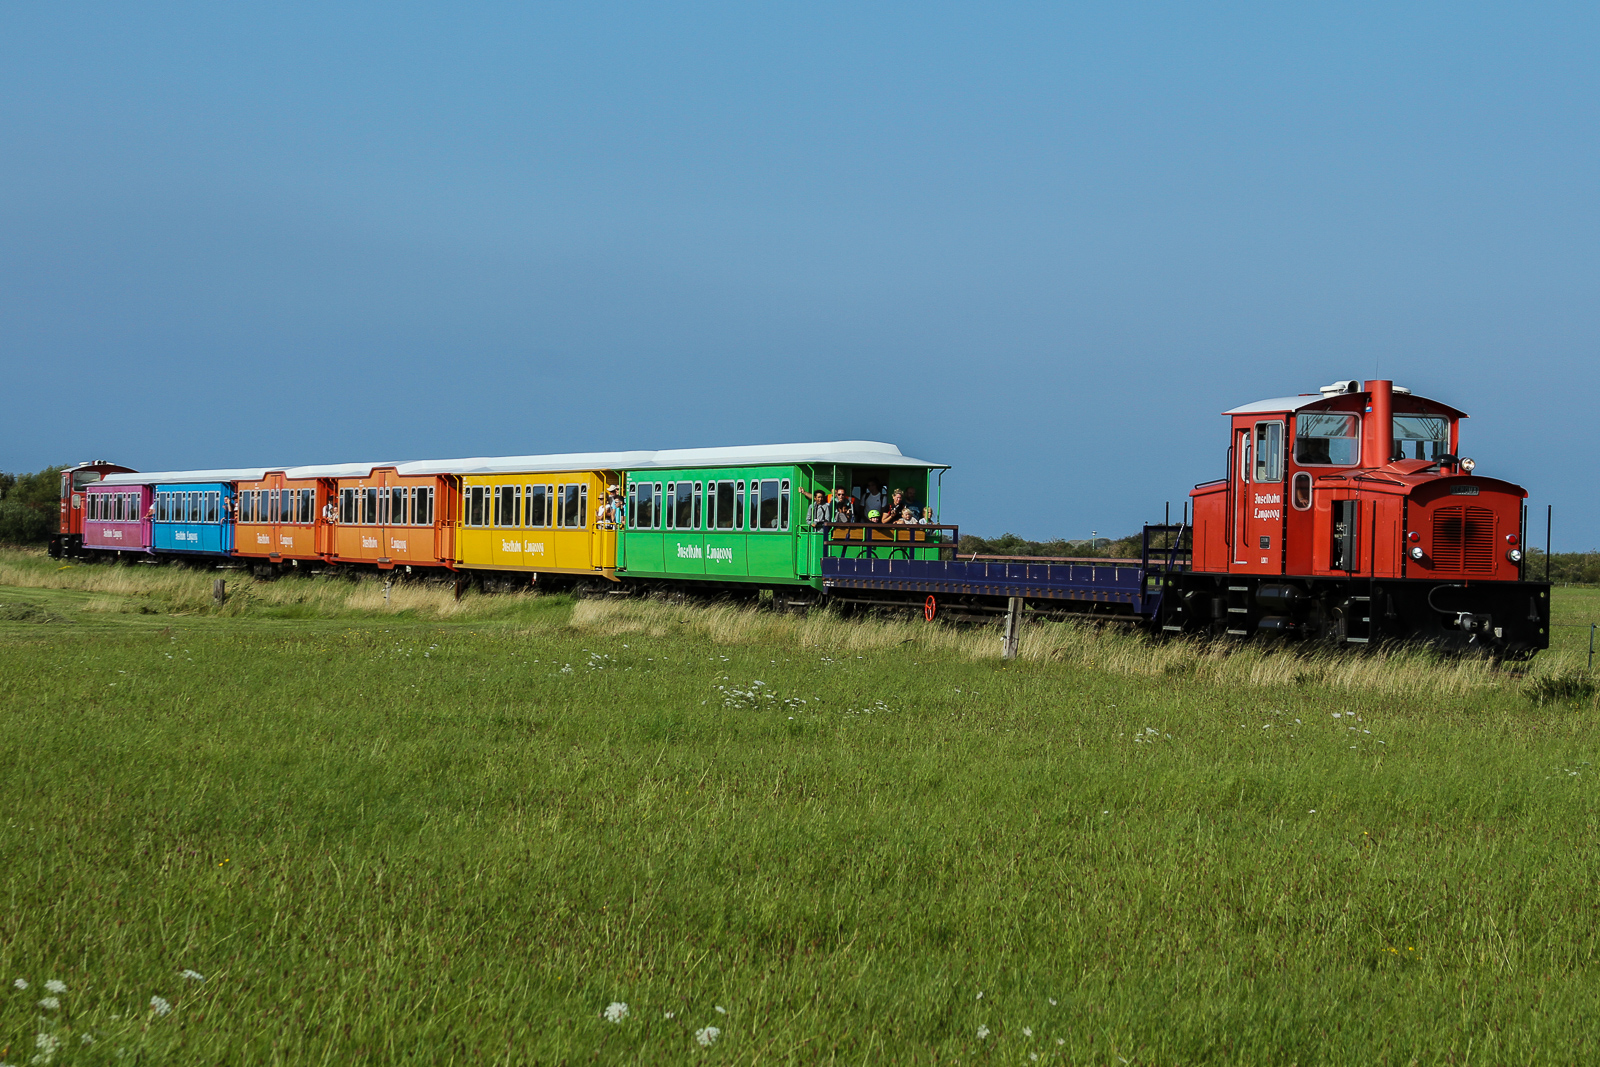 Ein Zug der Inselbahn Langeoog vom Inselbahnhof in Richtung Fähranleger.
Die Inselbahn Langeoog ist eine nicht elektrifizierte, meterspurige und eingleisige Schmalspurbahn auf der ostfriesischen Insel Langeoog. Sie wird vom Eigenbetrieb Schiffahrt der Inselgemeinde Langeoog betrieben. Die Inselbahn verbindet auf 2,6 Kilometer Länge den Fährhafen mit dem Ort Langeoog. Die Fahrzeit für die Strecke beträgt etwa sieben Minuten. Die Reihenfolge der Wagen und damit auch das farbliche Erscheinungsbild der Züge ist immer Random. Leider hat das Farbbild nicht grossartig variiert während meine Aufenthalts im August 2023.